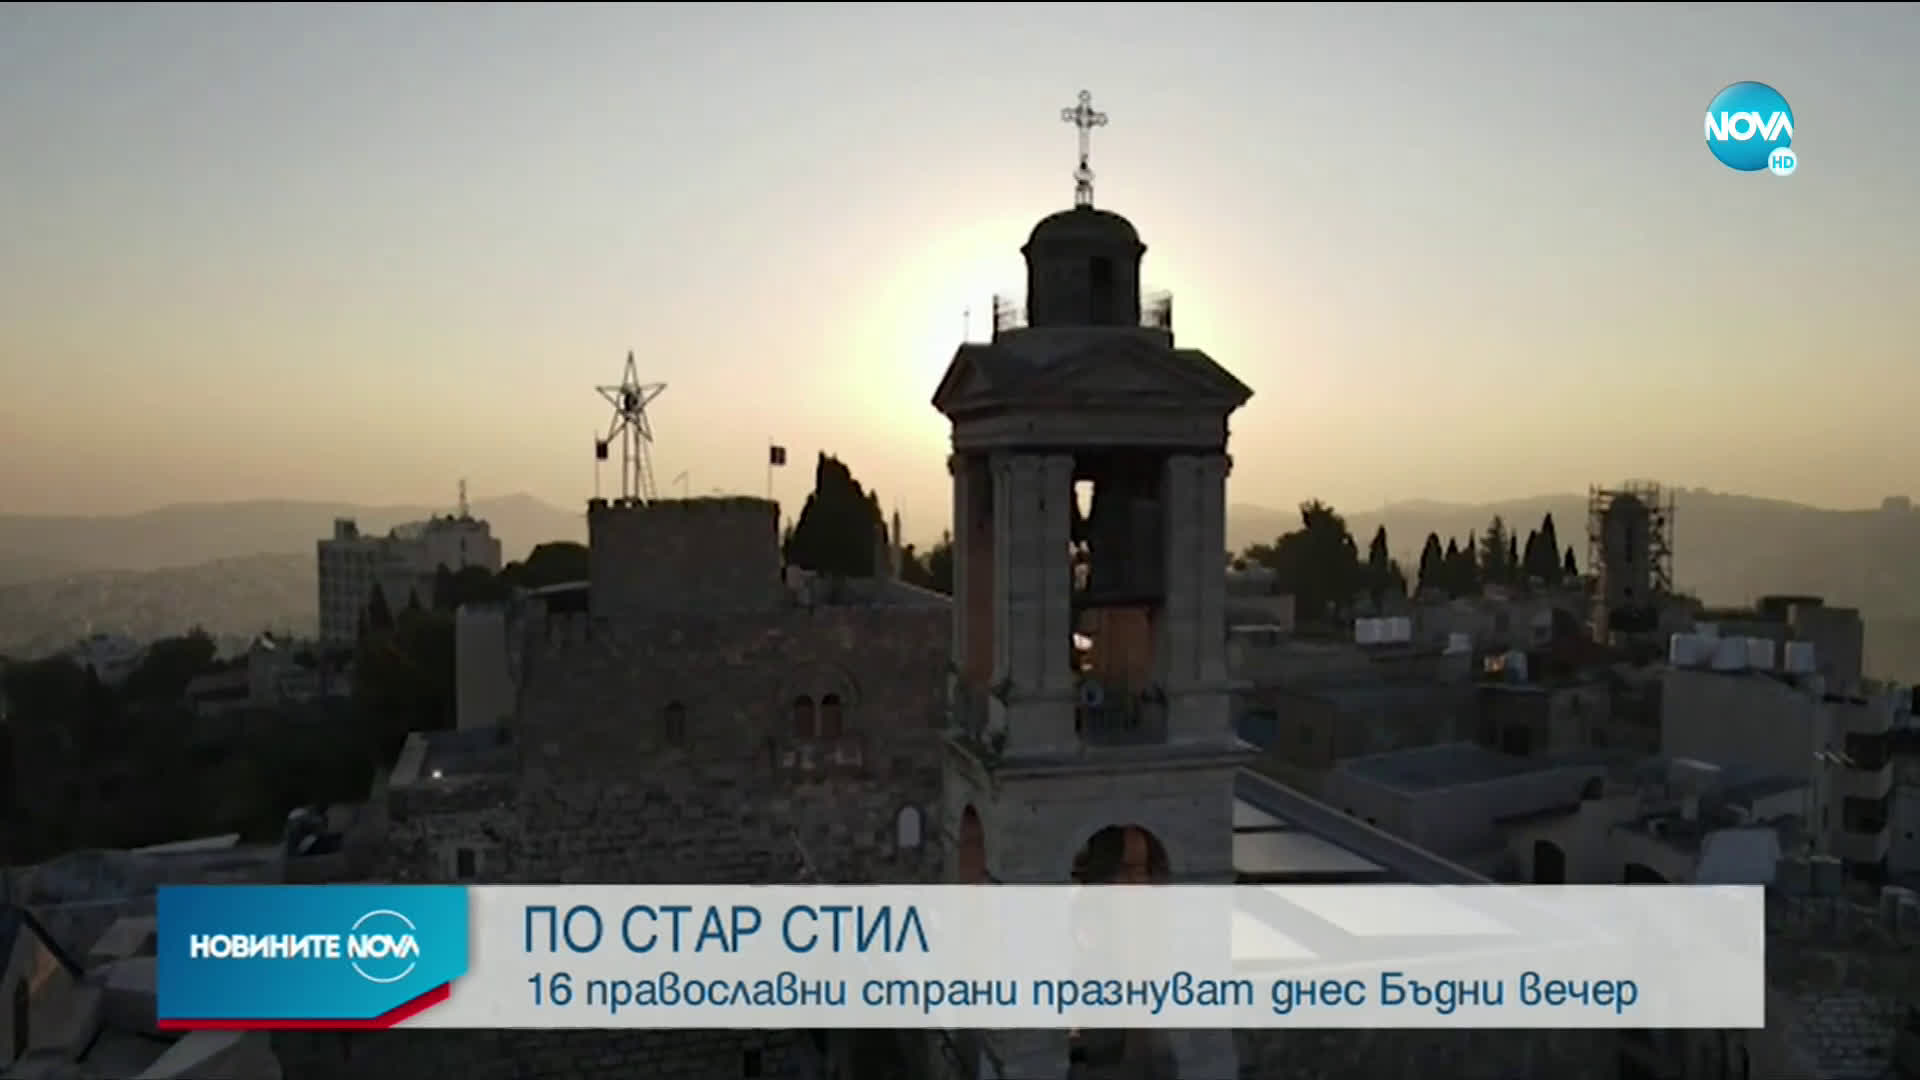 Православни страни празнуват днес Бъдни вечер